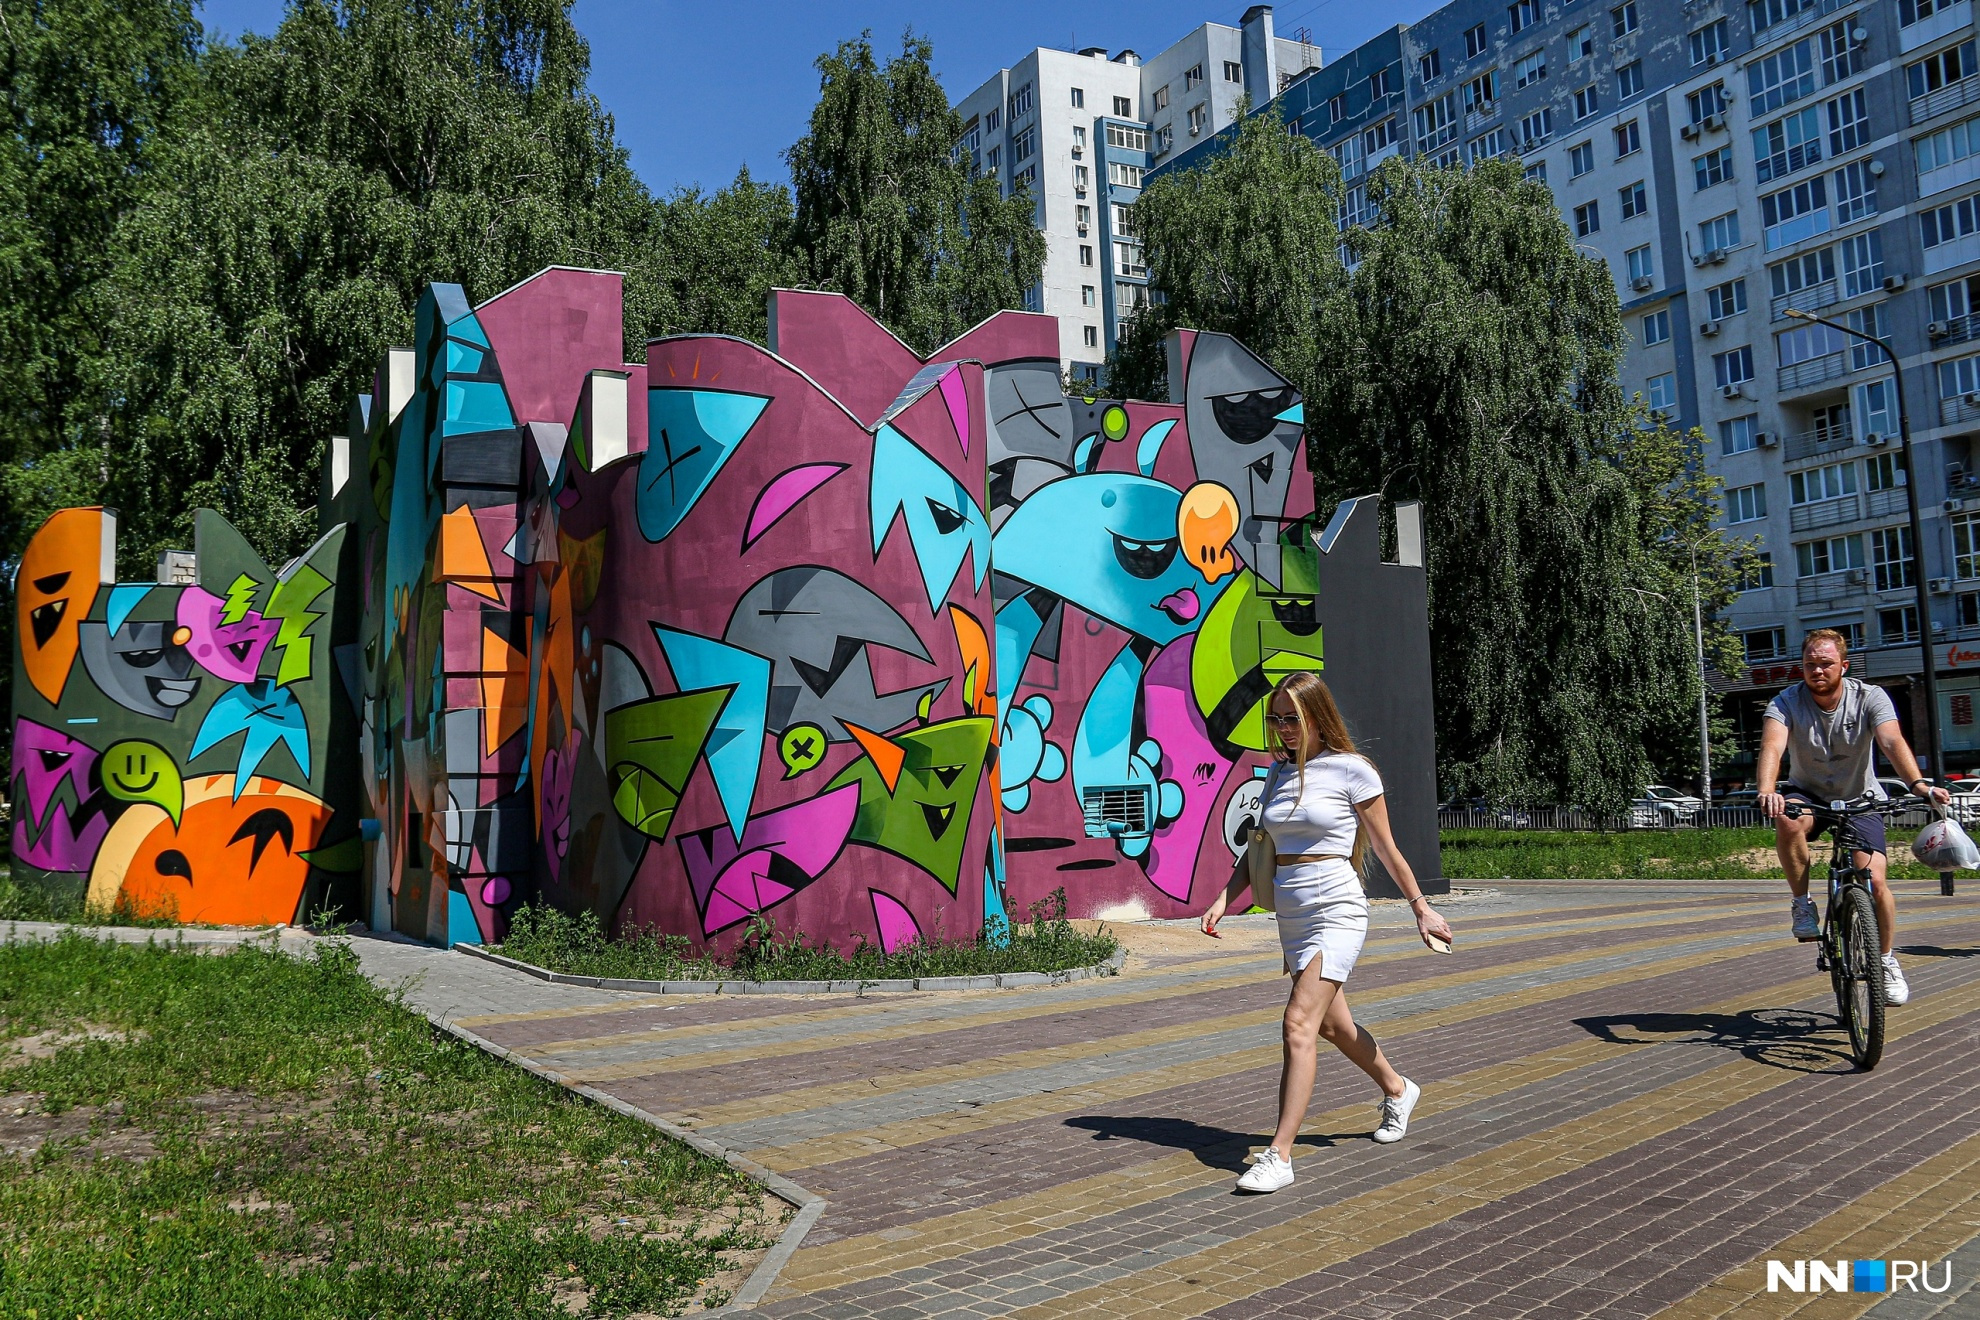 В парке имени Пушкина появилась работа московского художника Захара Евсеева, в творческой среде более известного как ZAK MINI MONSTER